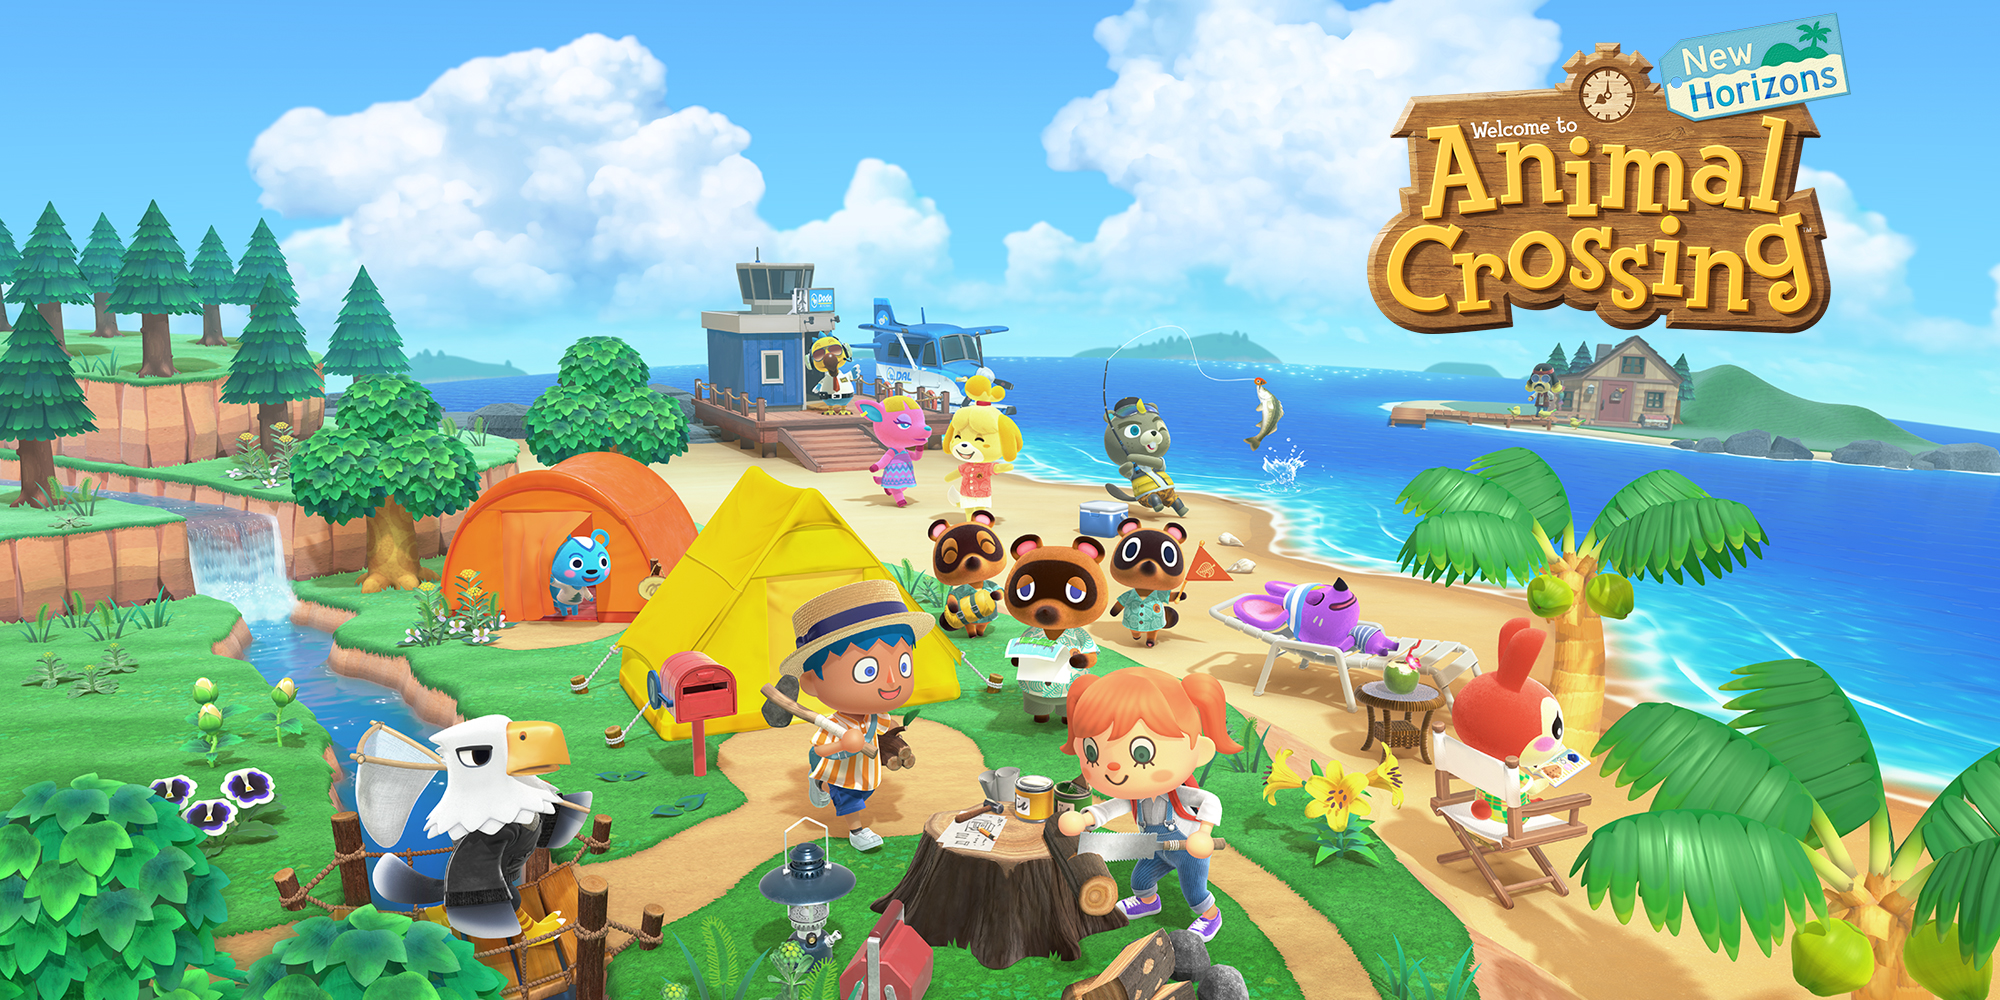 Ontdek wat het eilandleven voor je in petto heeft in Animal Crossing: New Horizons!